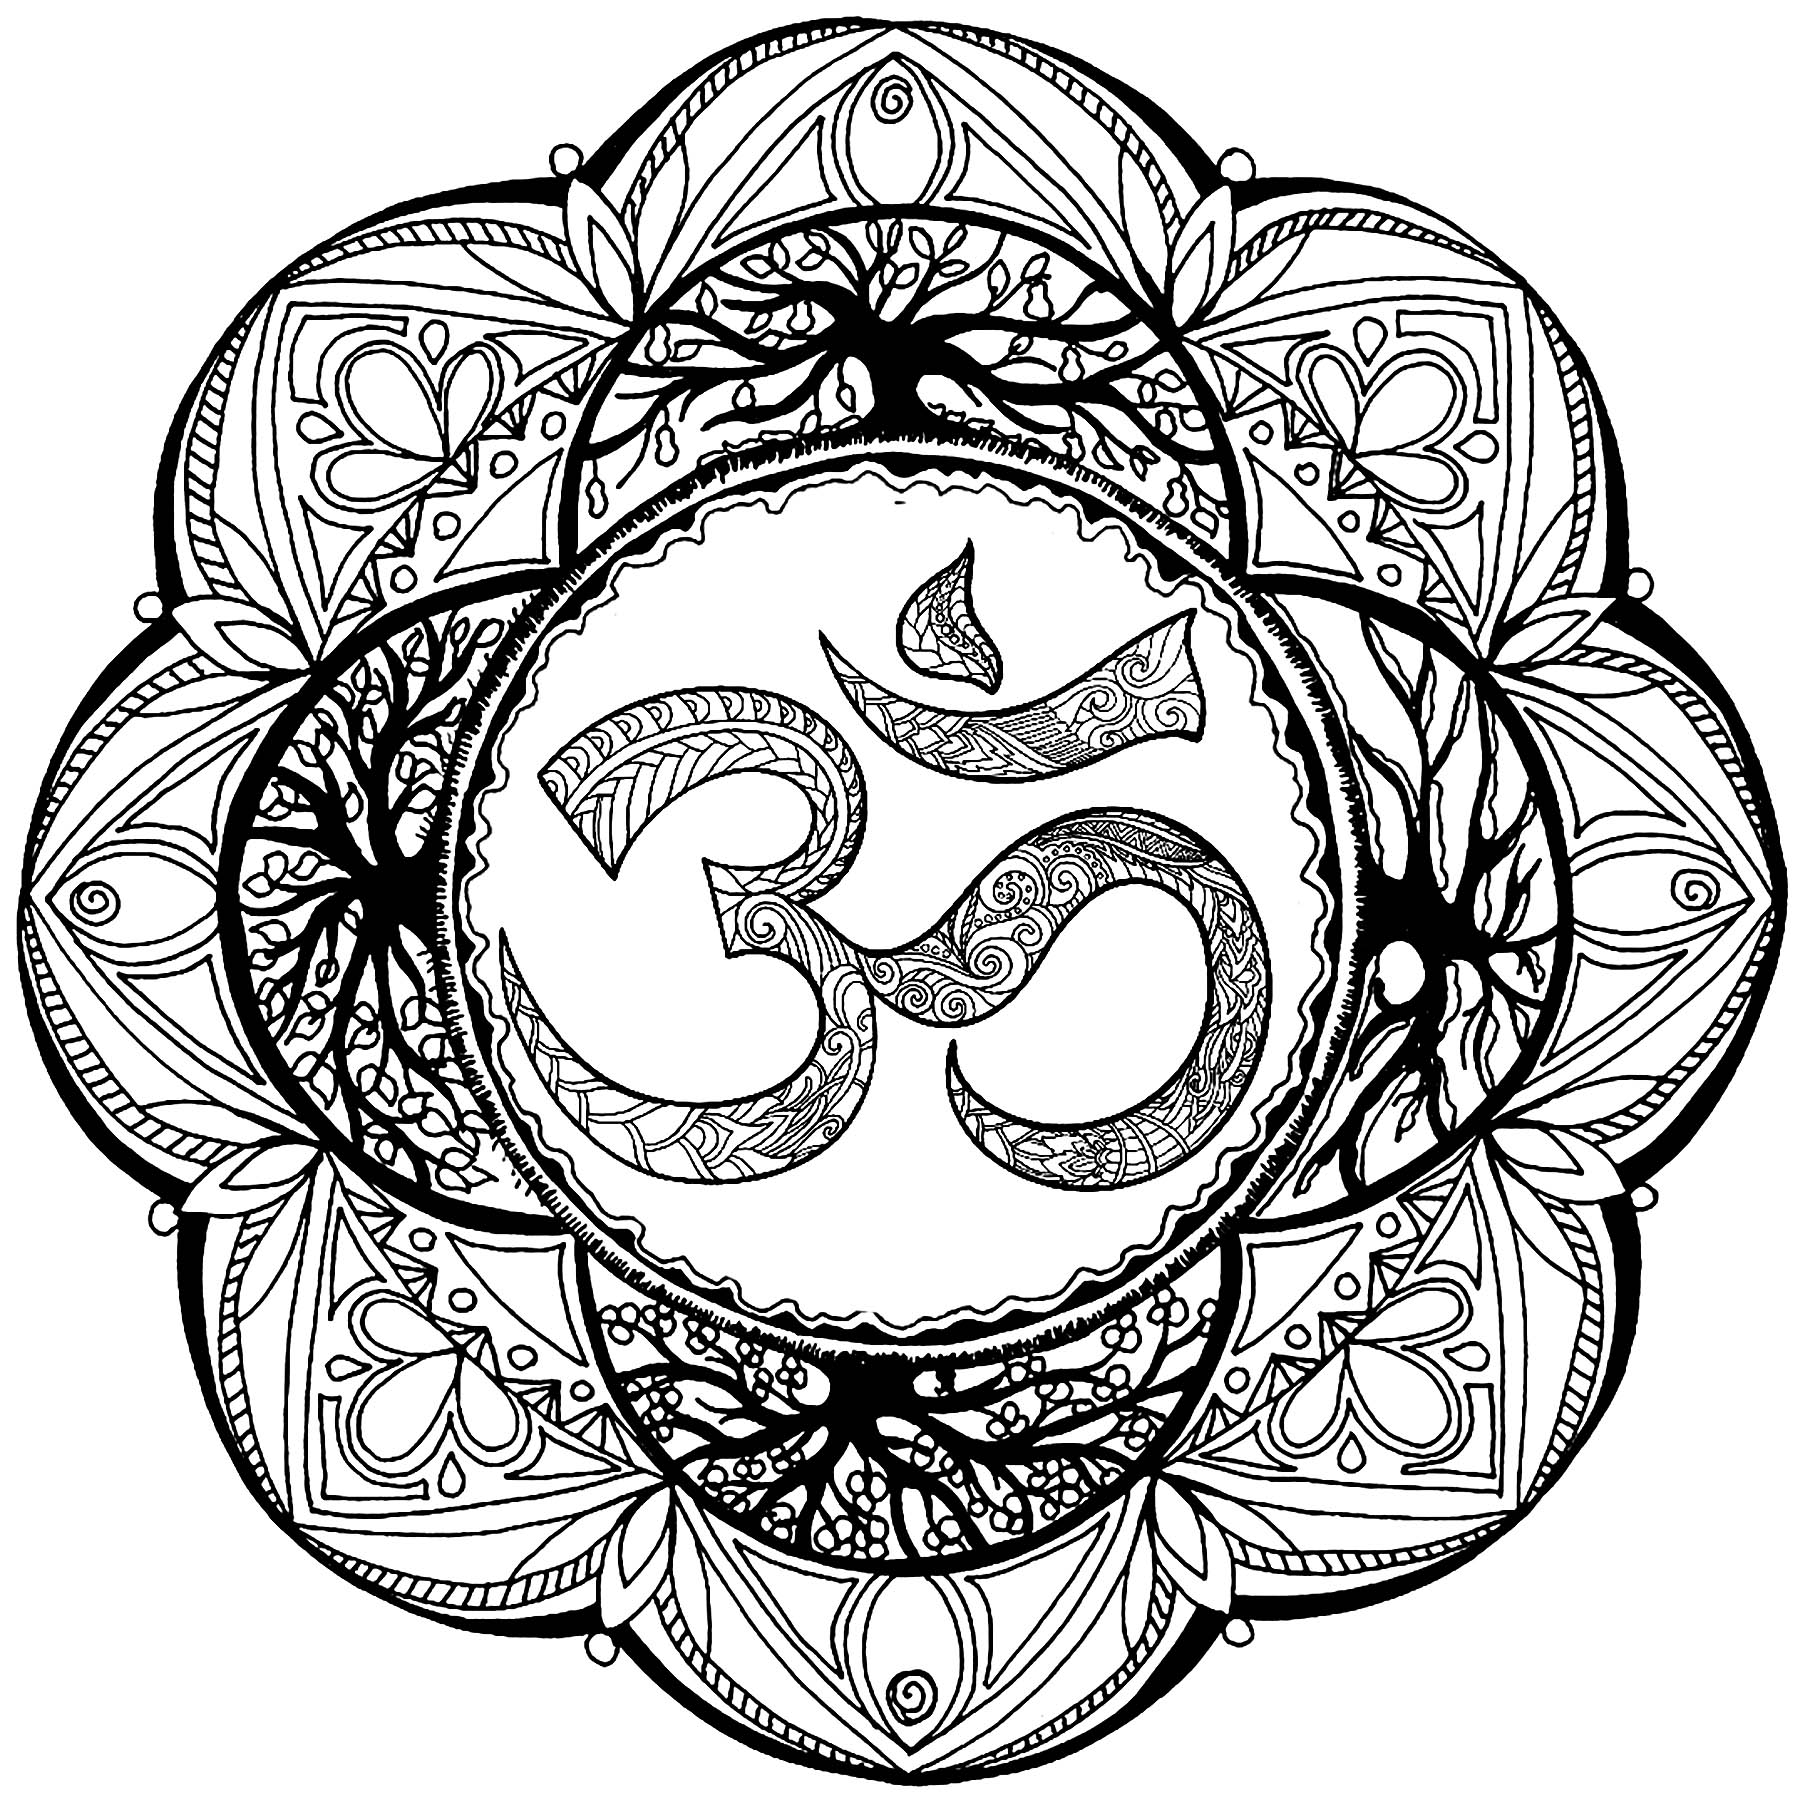 Ein hübsches Mandala aus komplexen Mustern und dem Symbol 'Om'.